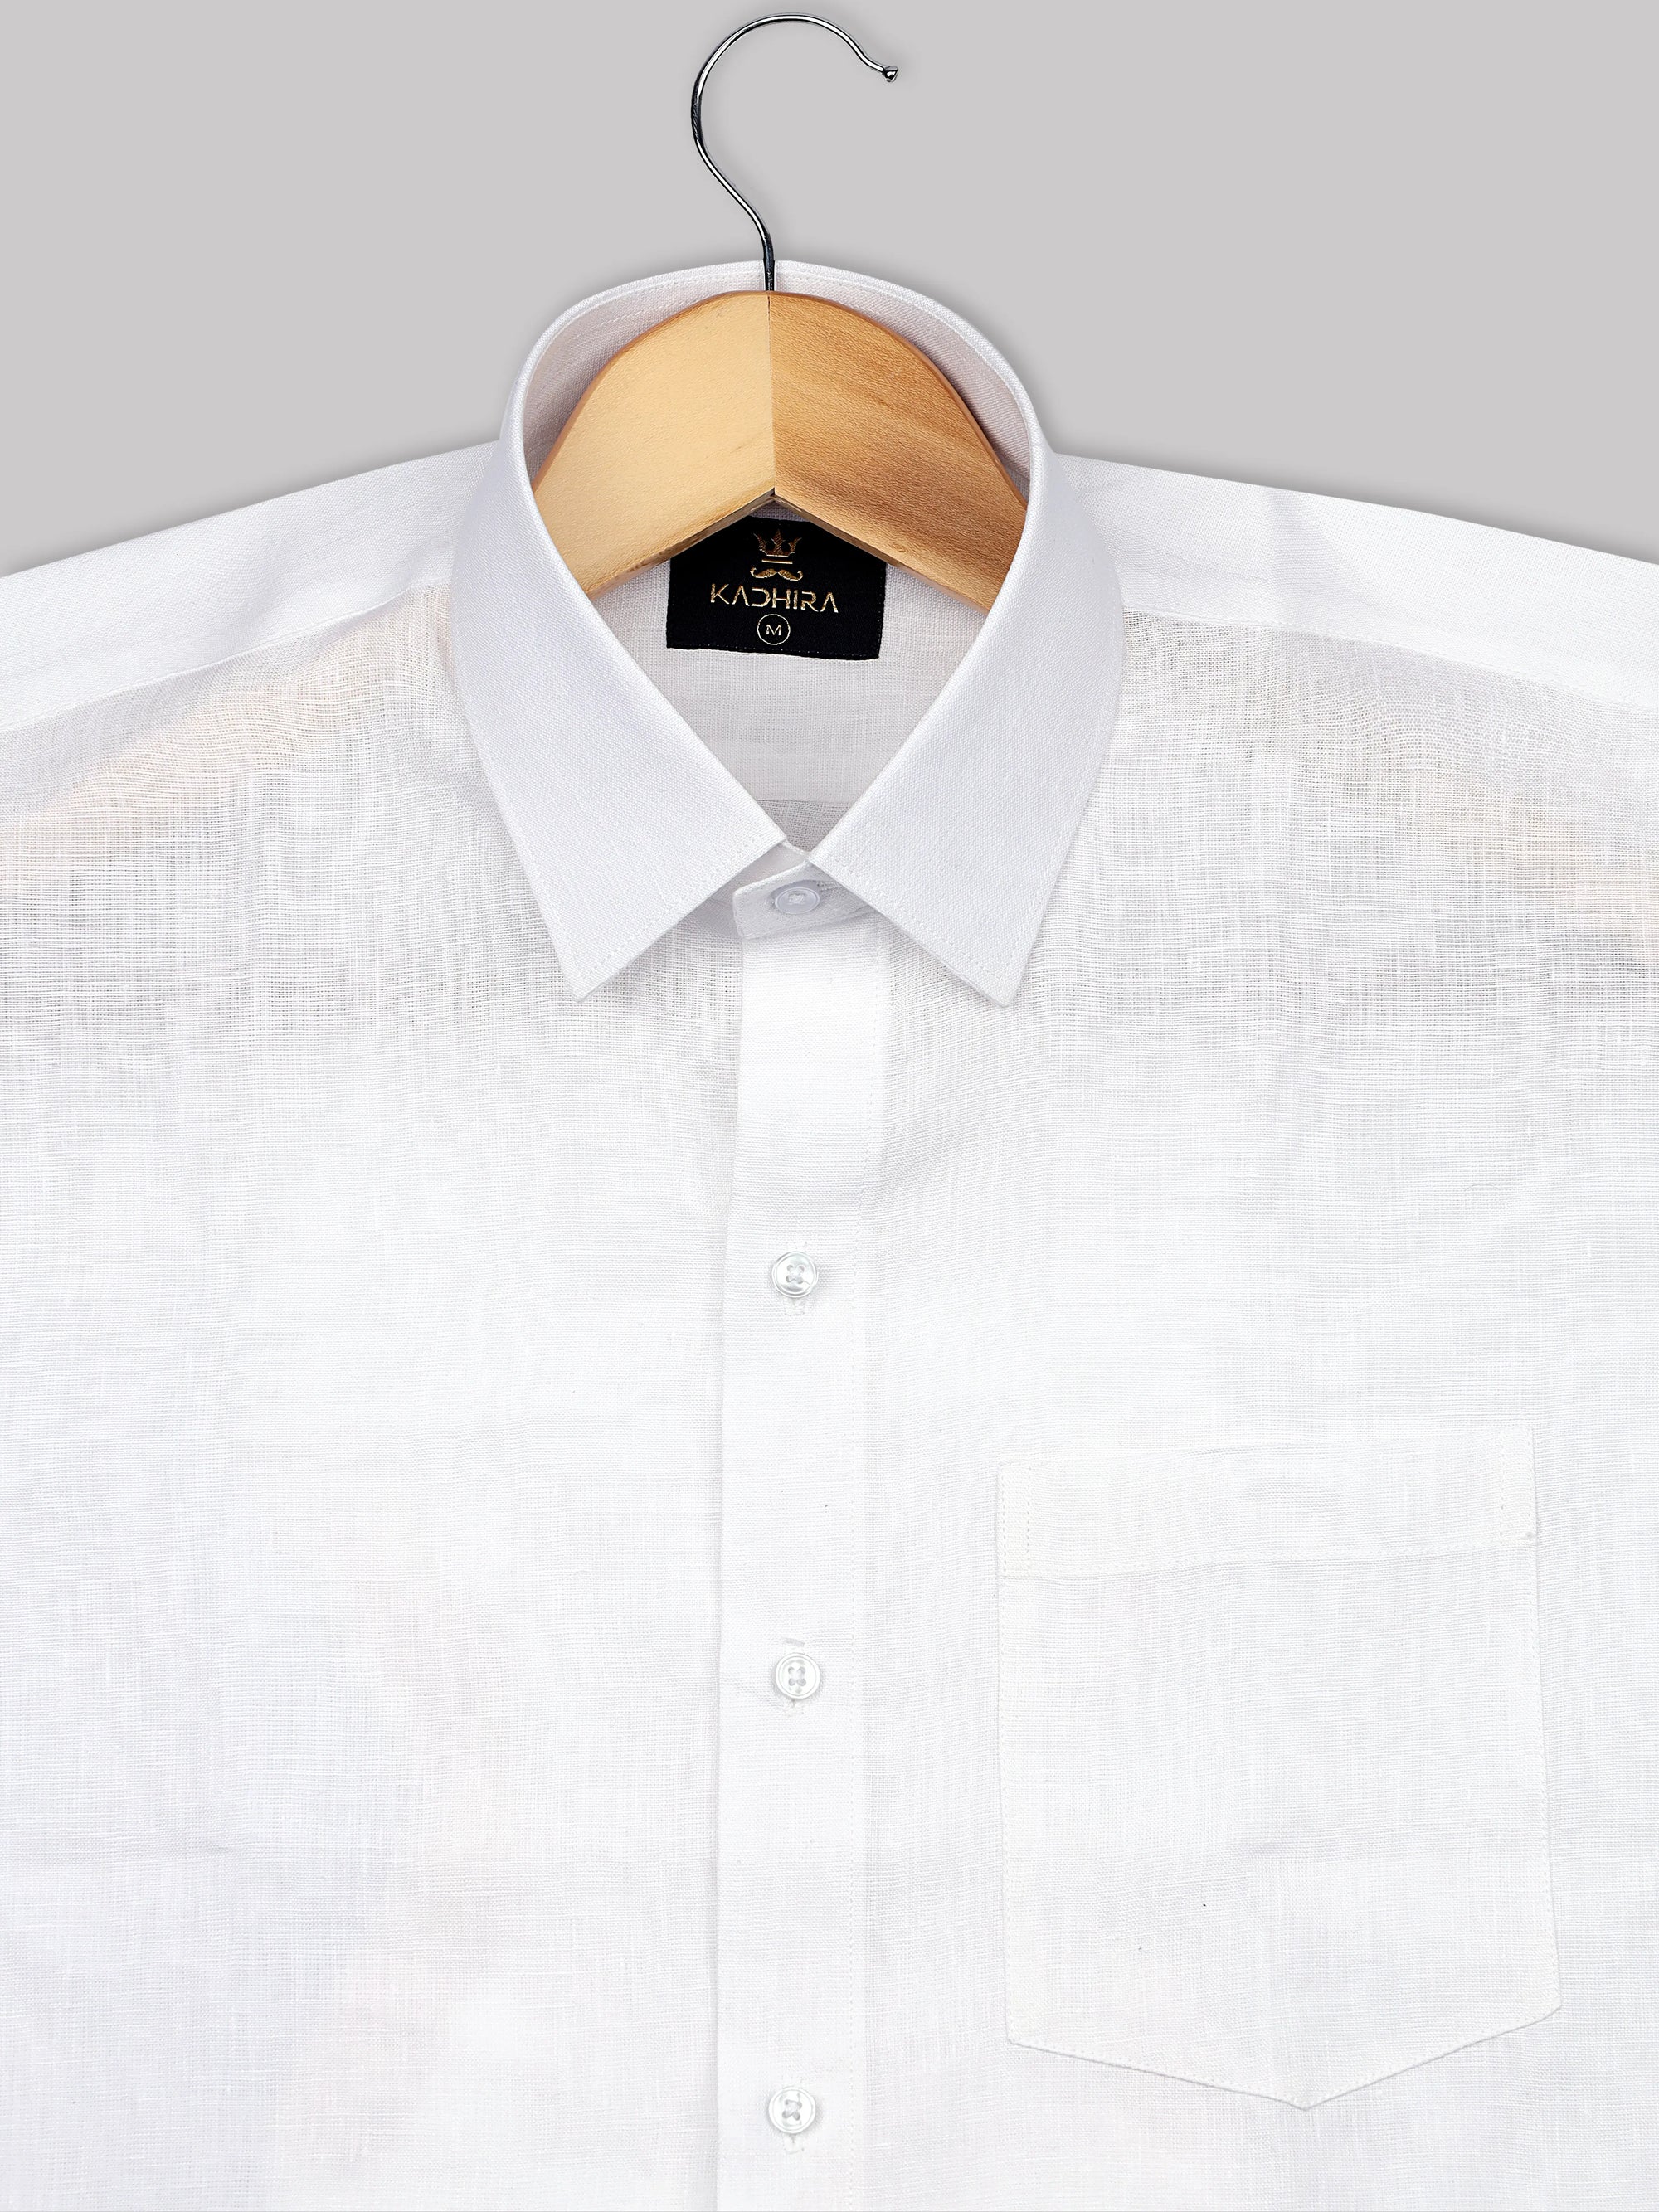 Sugar White Super Soft Linen Shirt